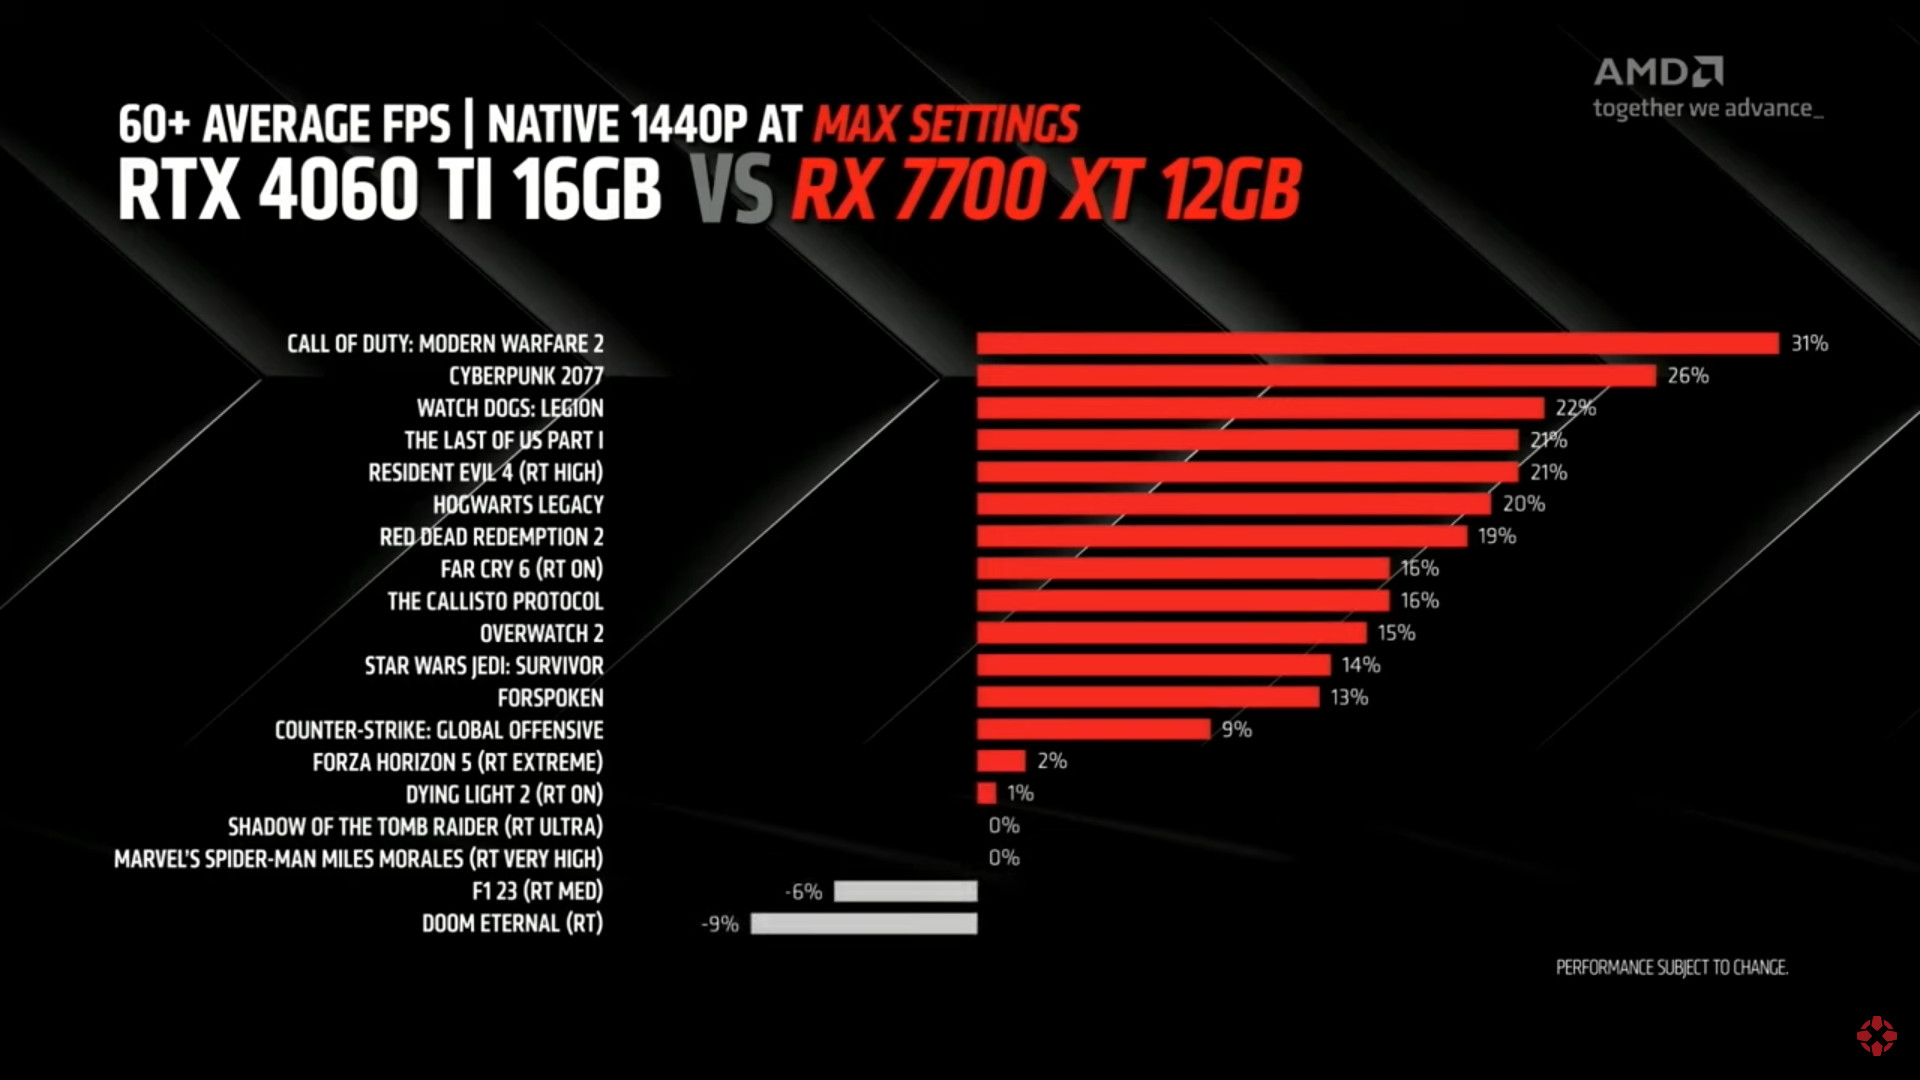 AMD RX 700 XT vs RTX 4060 TI chart